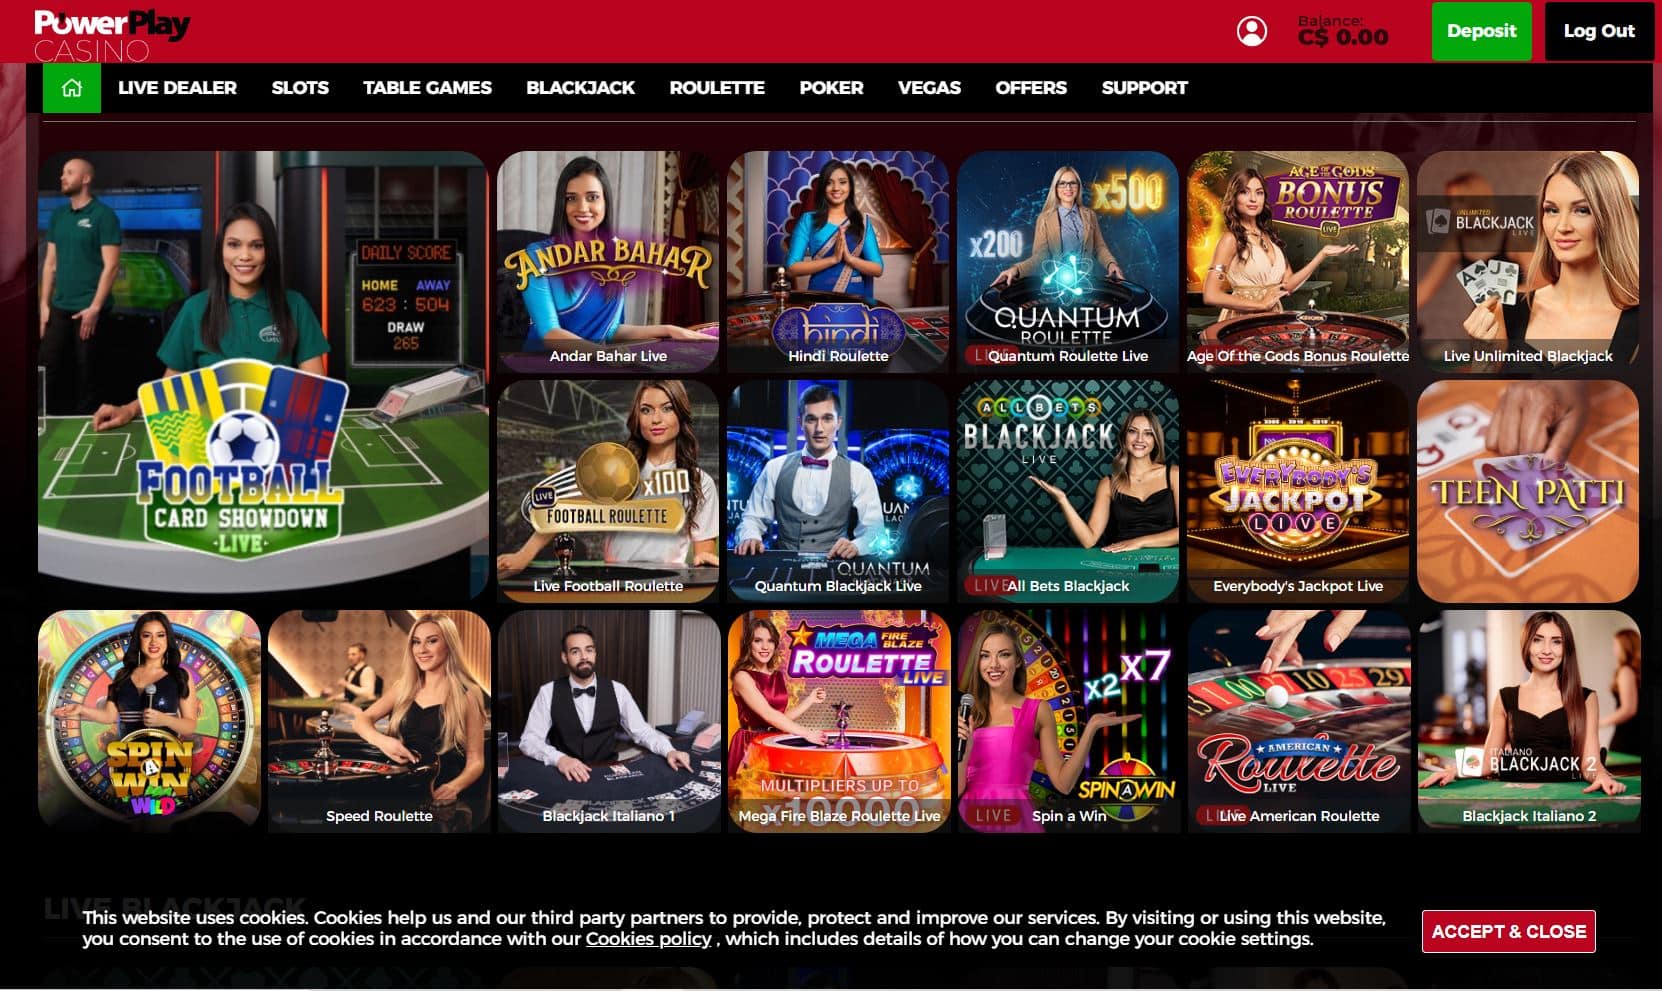 Start Gambling at Powerplay casino